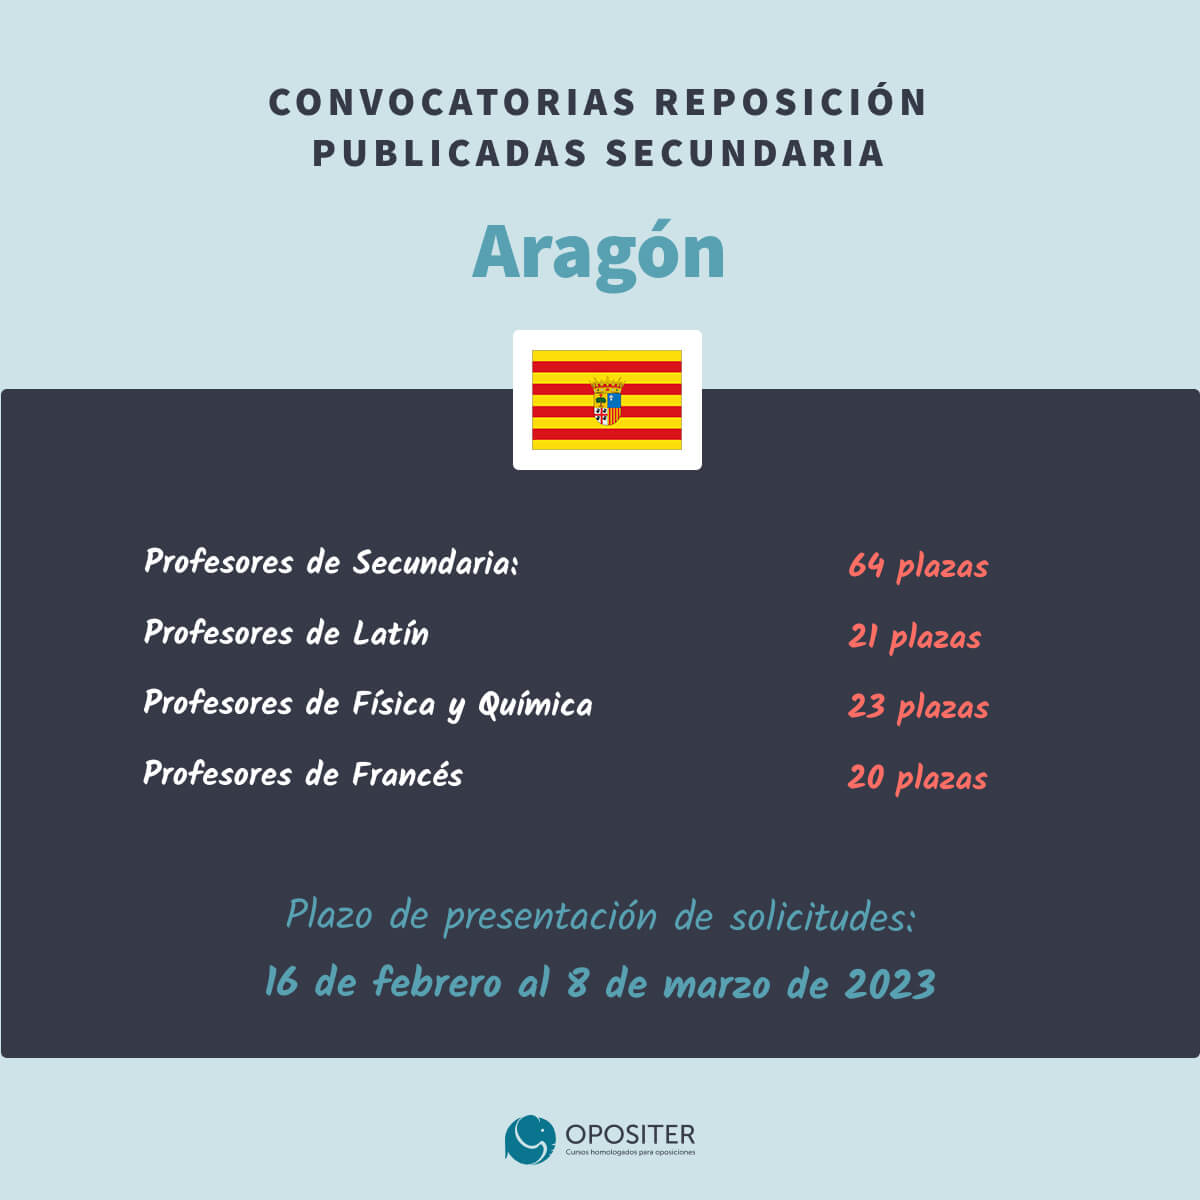 Secundaria-reposicion-Aragon